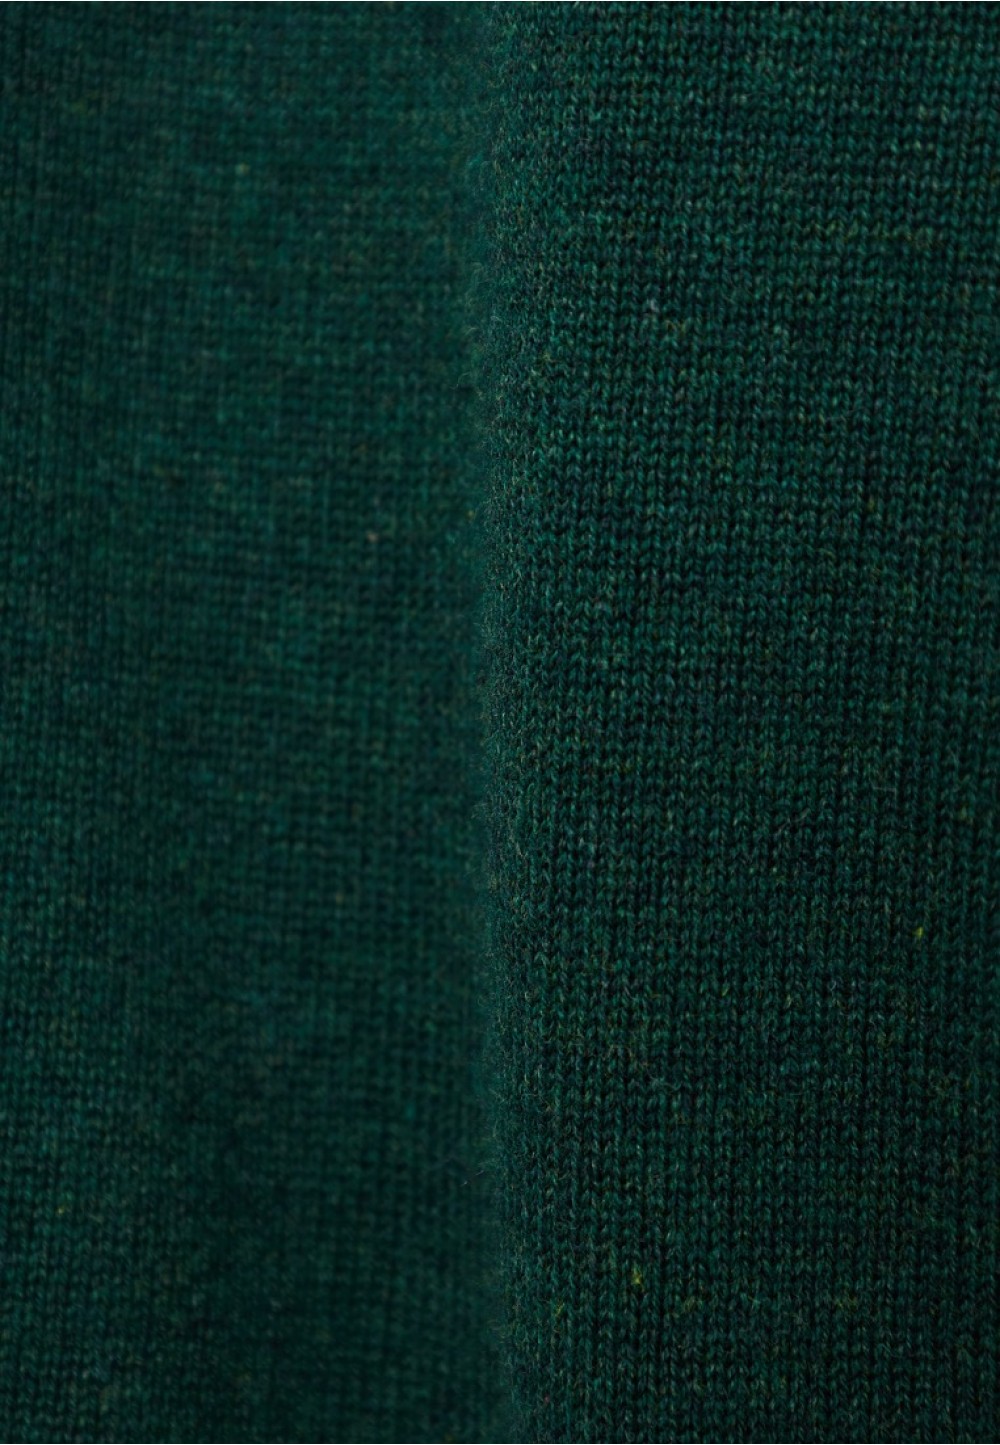 Мужской пуловер в насыщенном зеленом цвете